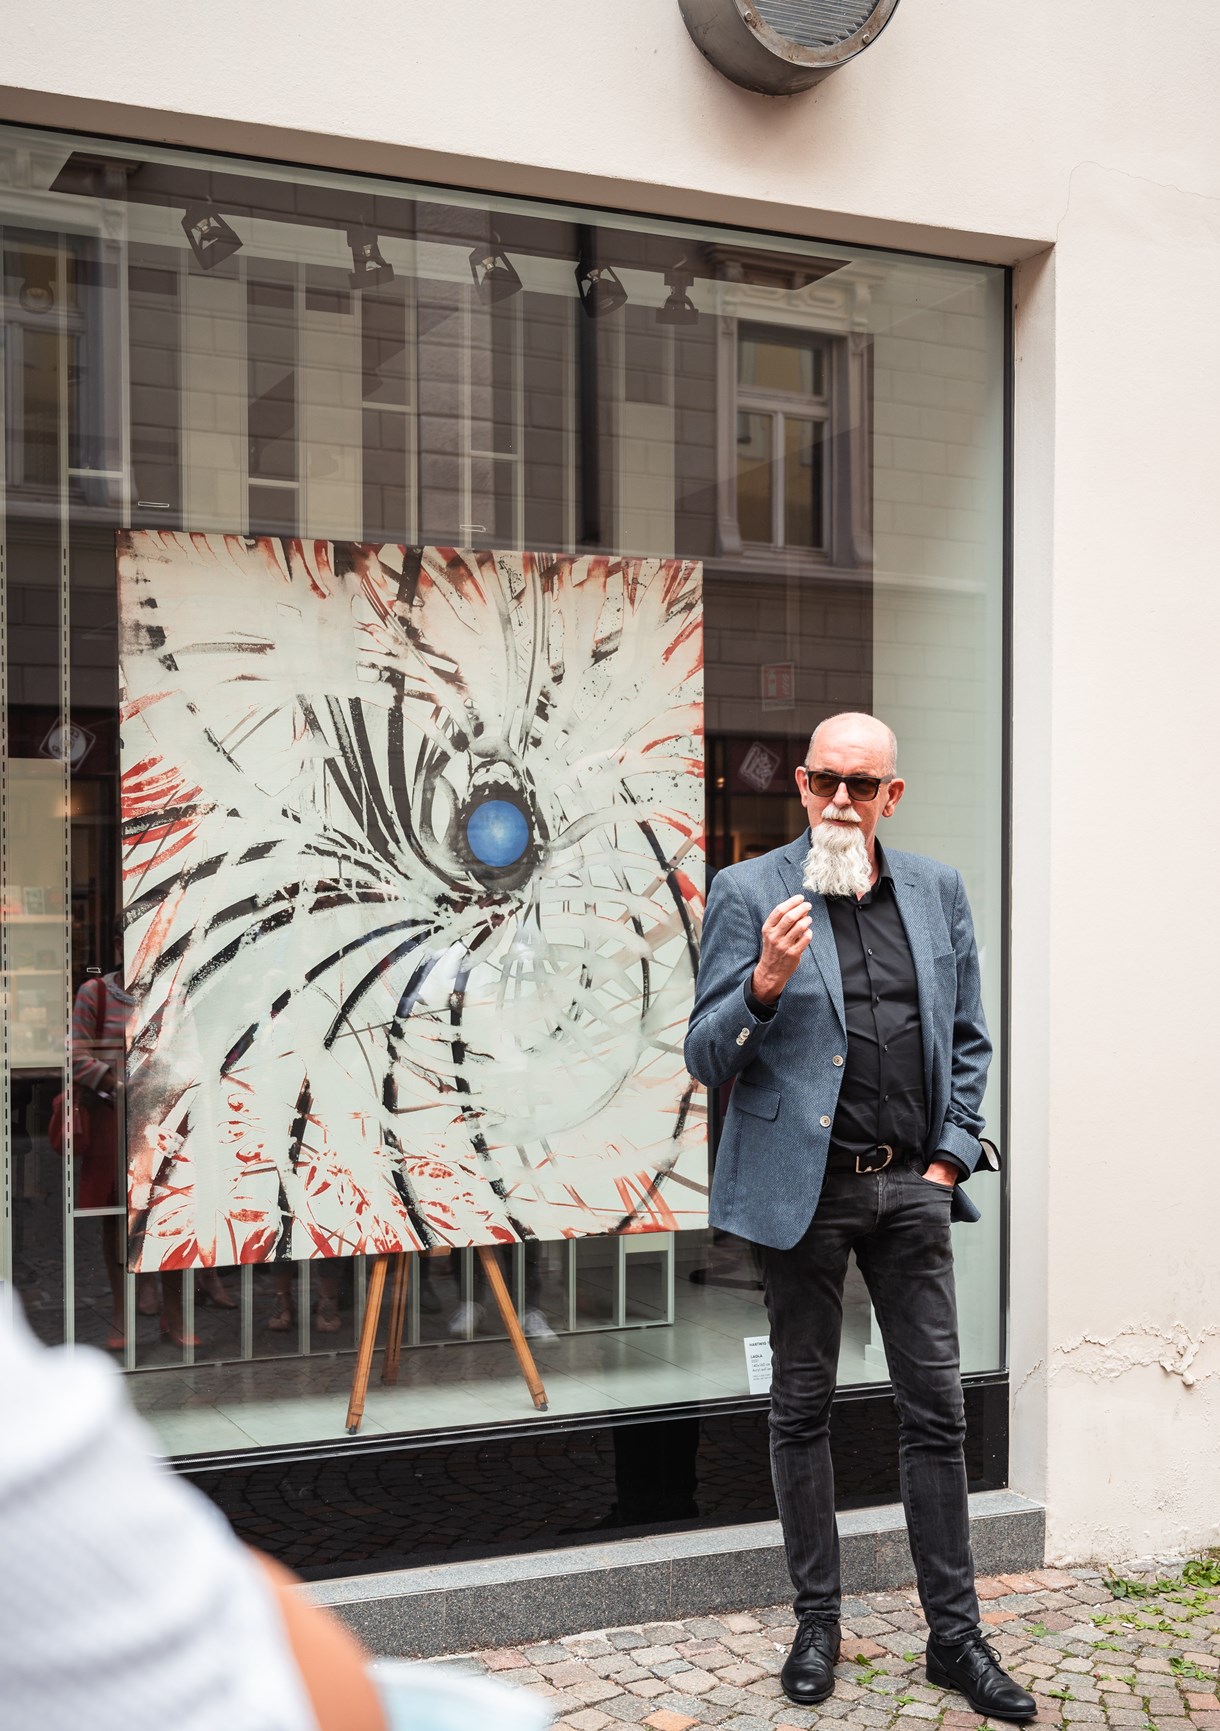 Hartwig Thaler (artista e curatore della mostra) presenta il proprio lavoro, esposto nell'ufficio dell' "Alter Schlachthof" nella Via Torre bianca a Bressanone.